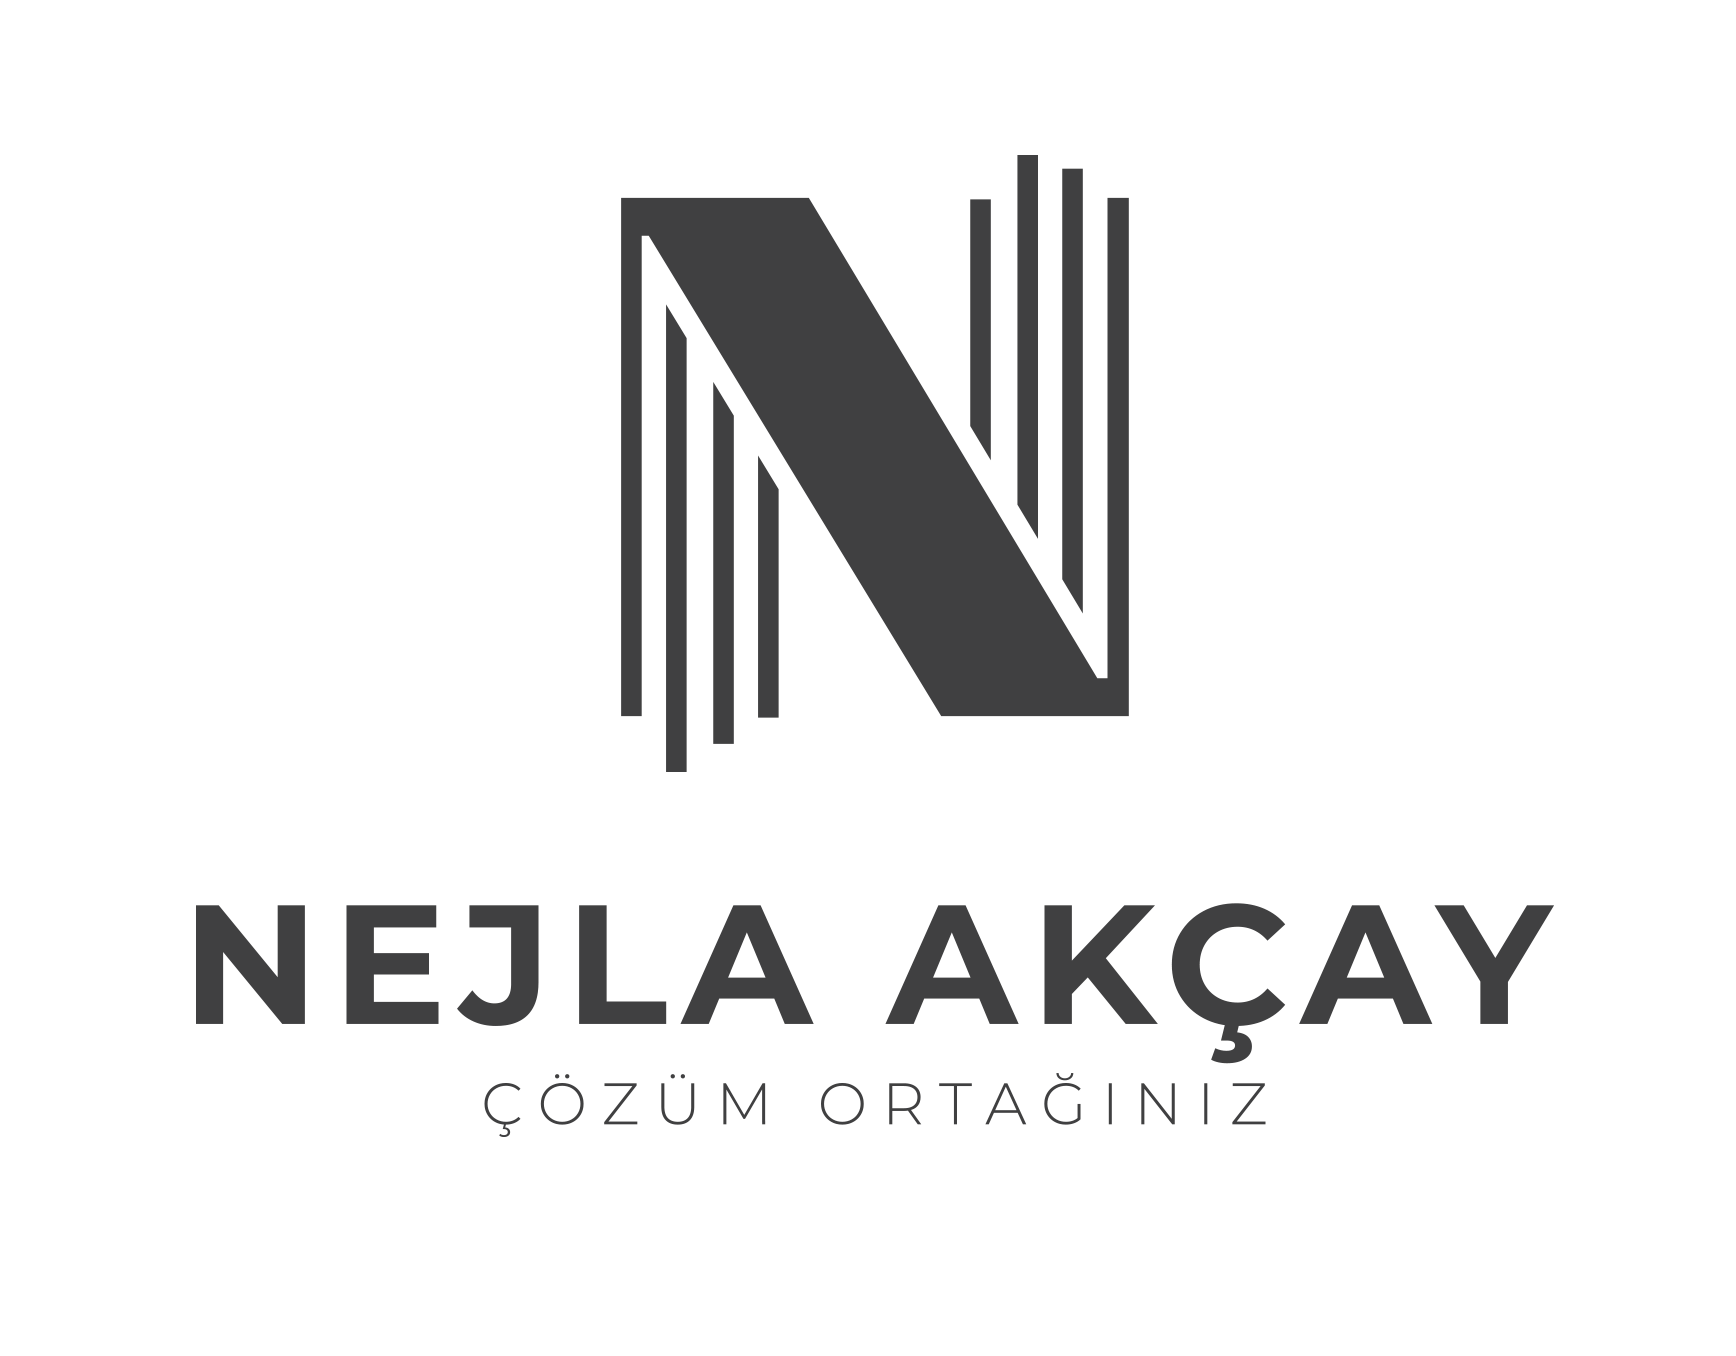 Nejla Akçay